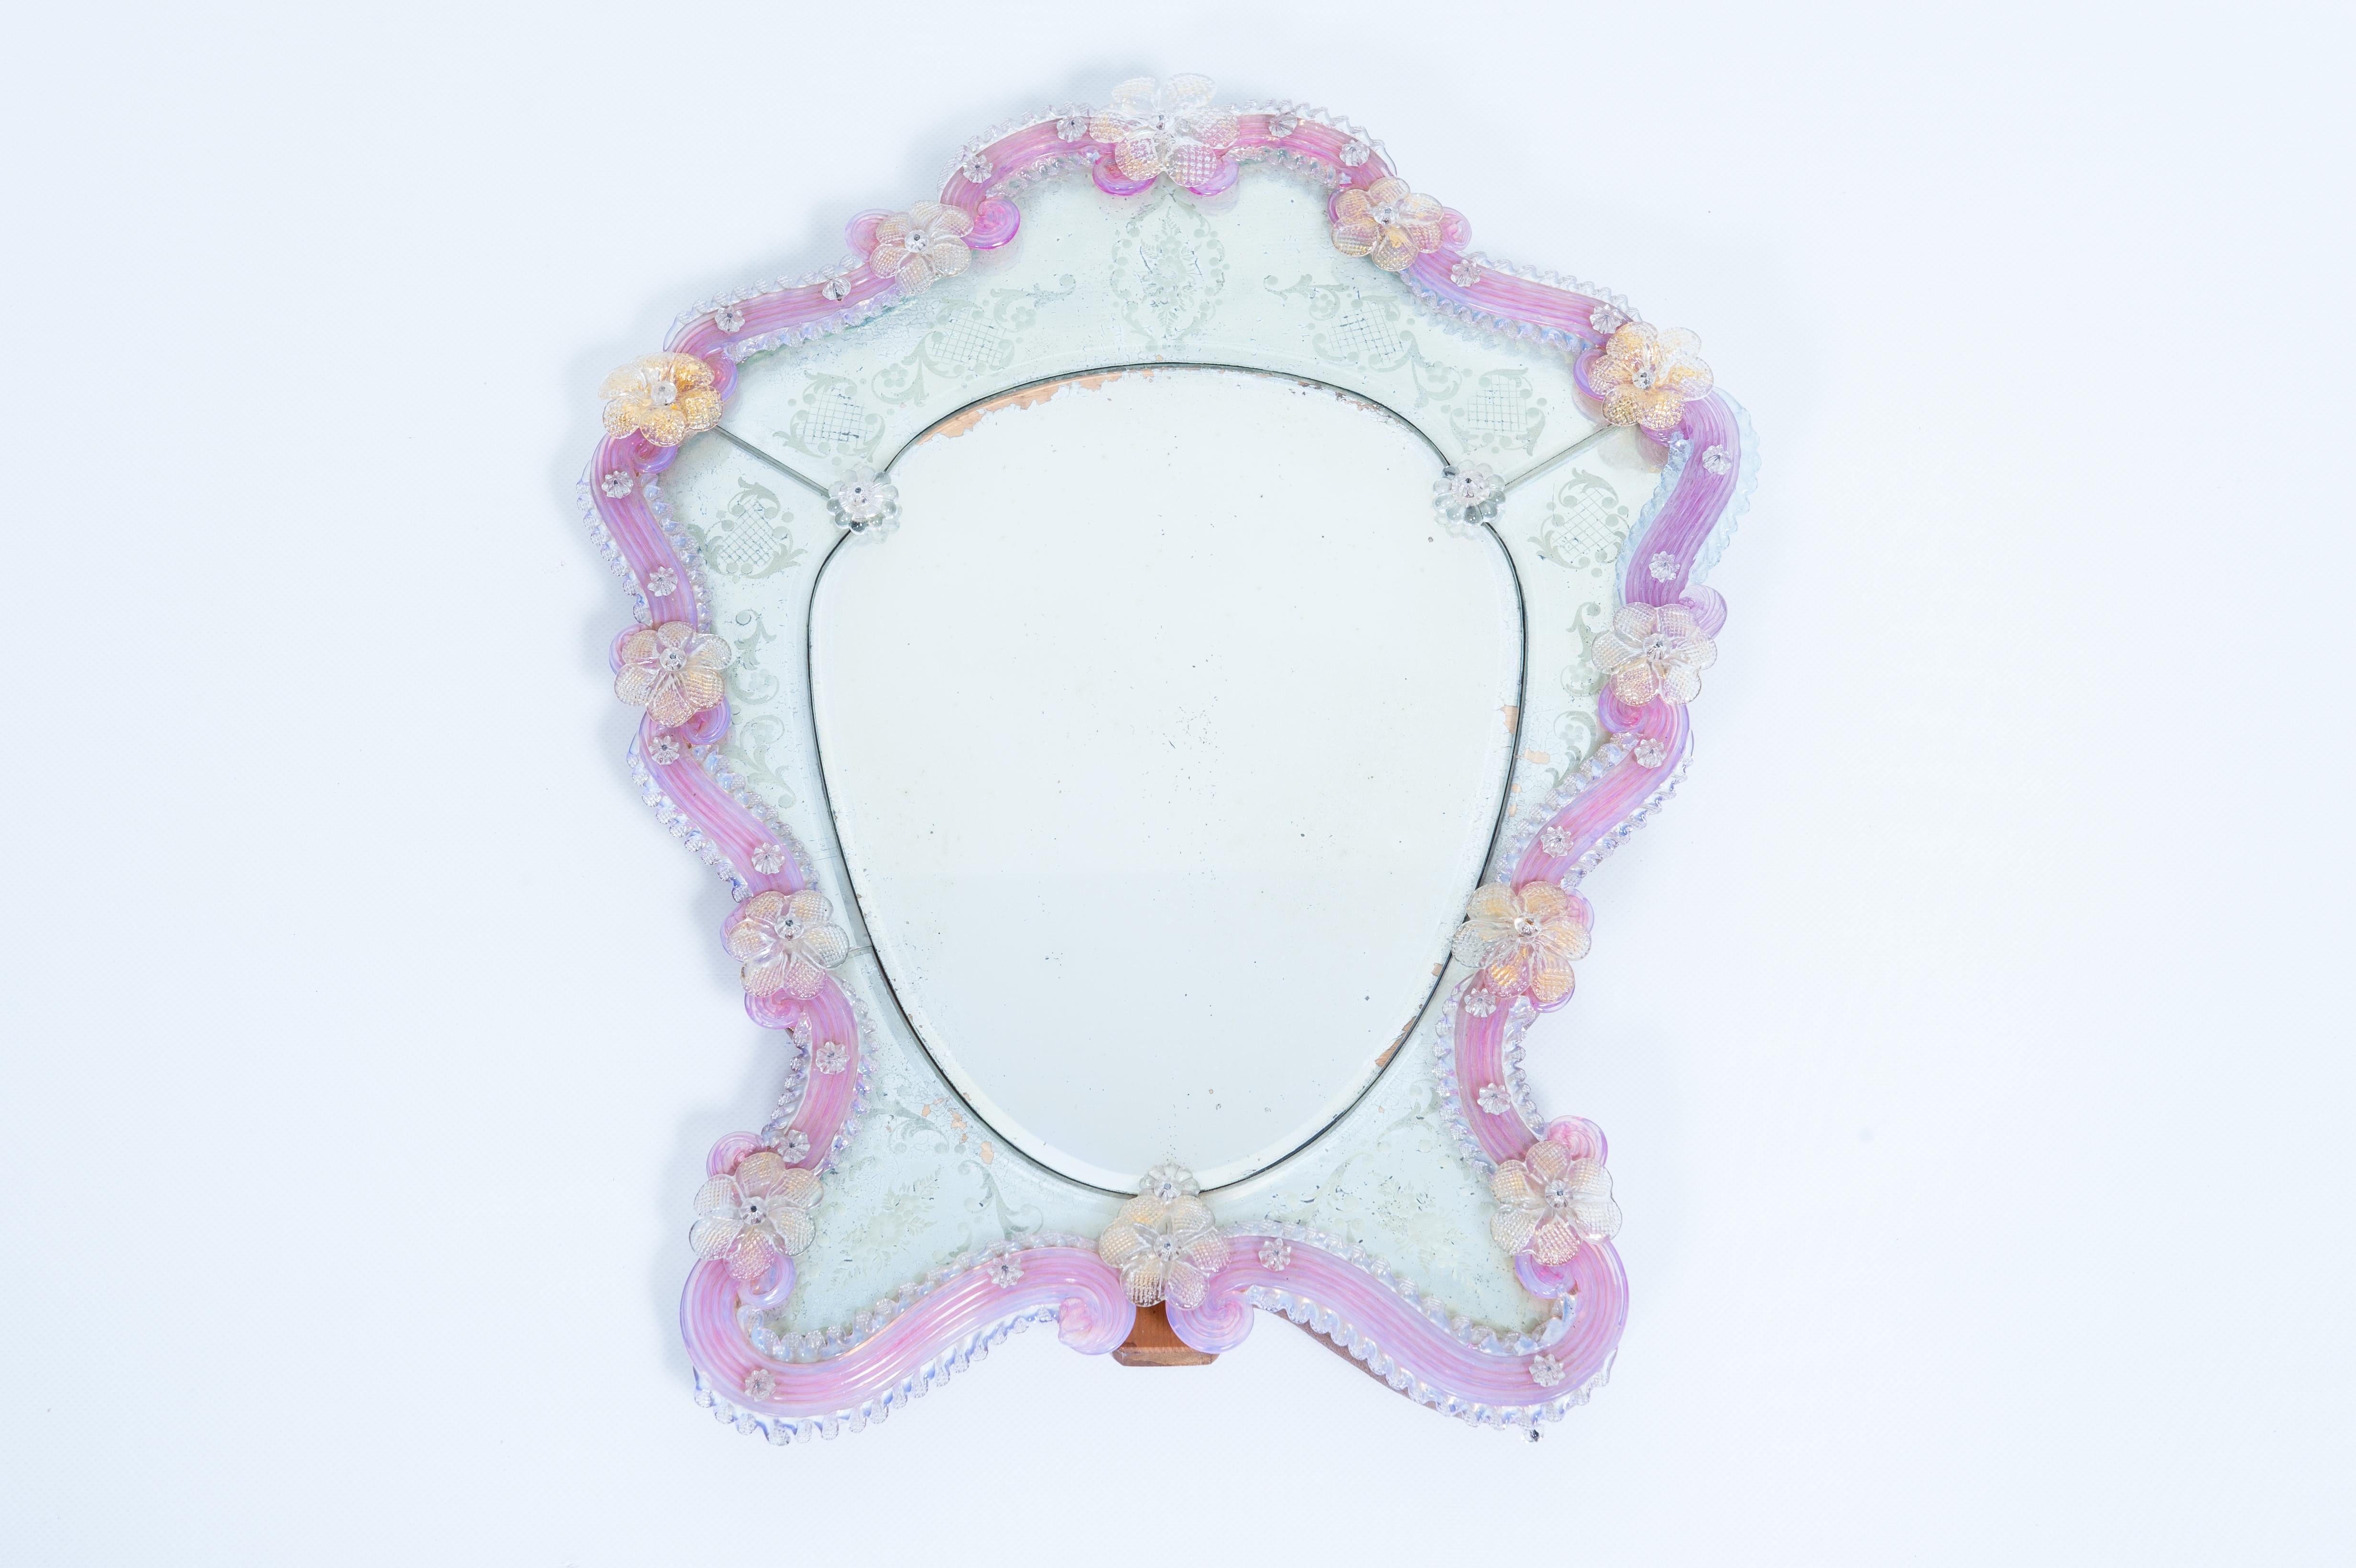 Miroir de table en verre de Murano avec gravures et décoration florale rose 1950 Italie.
Découvrez ce miroir à poser en verre de Murano des années 1950, raffiné et original, qui satisfera les plus exigeants. 
Ce miroir de table est idéal pour